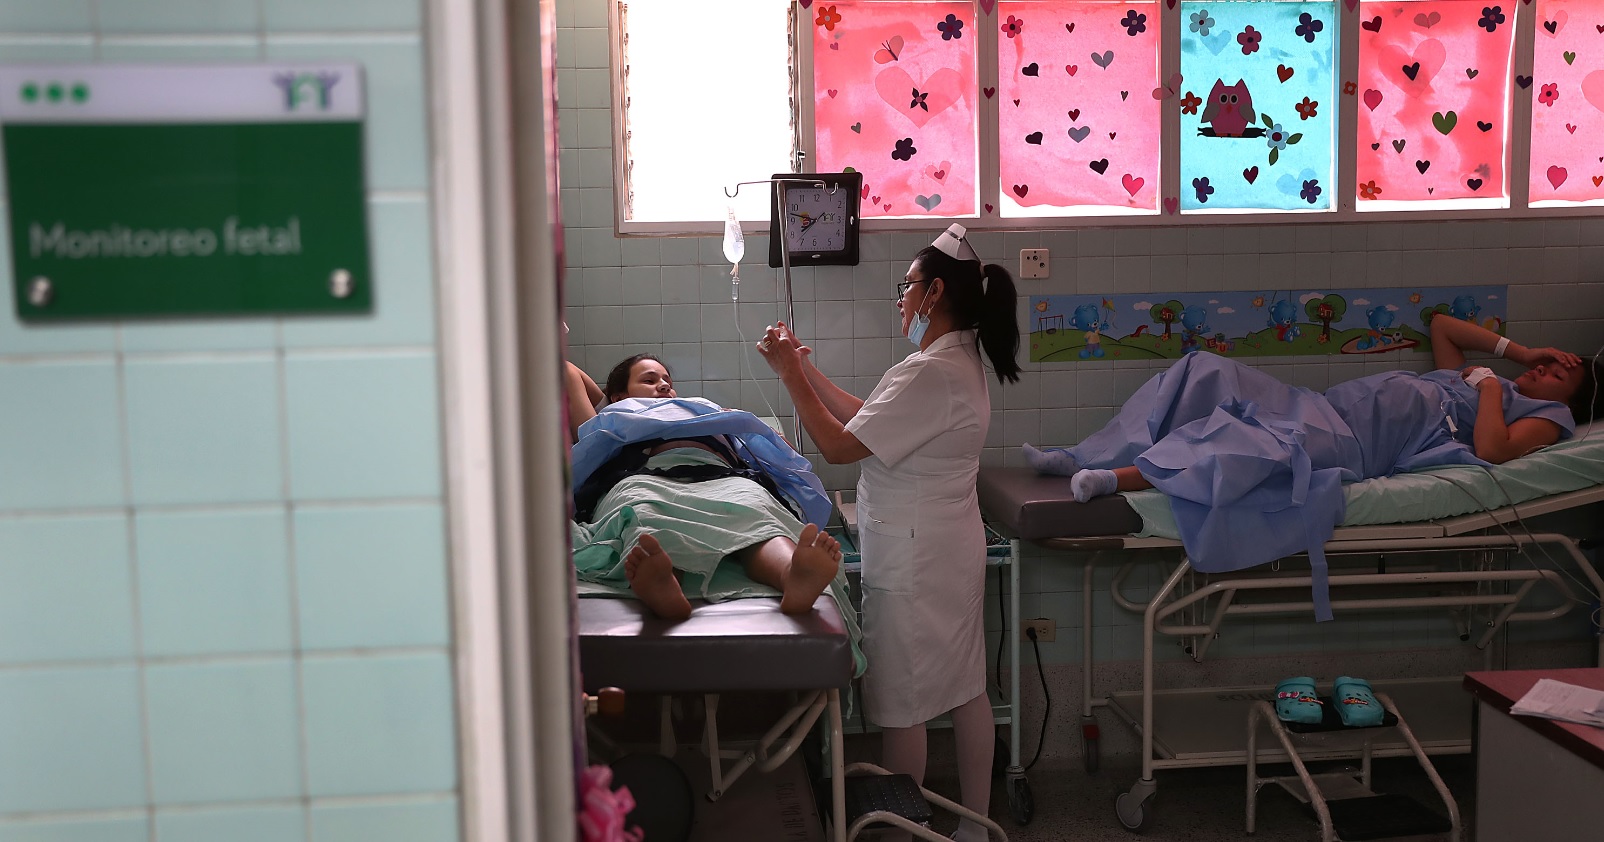 Enfermera ayuda pacientes embarazadas (Getty Images)